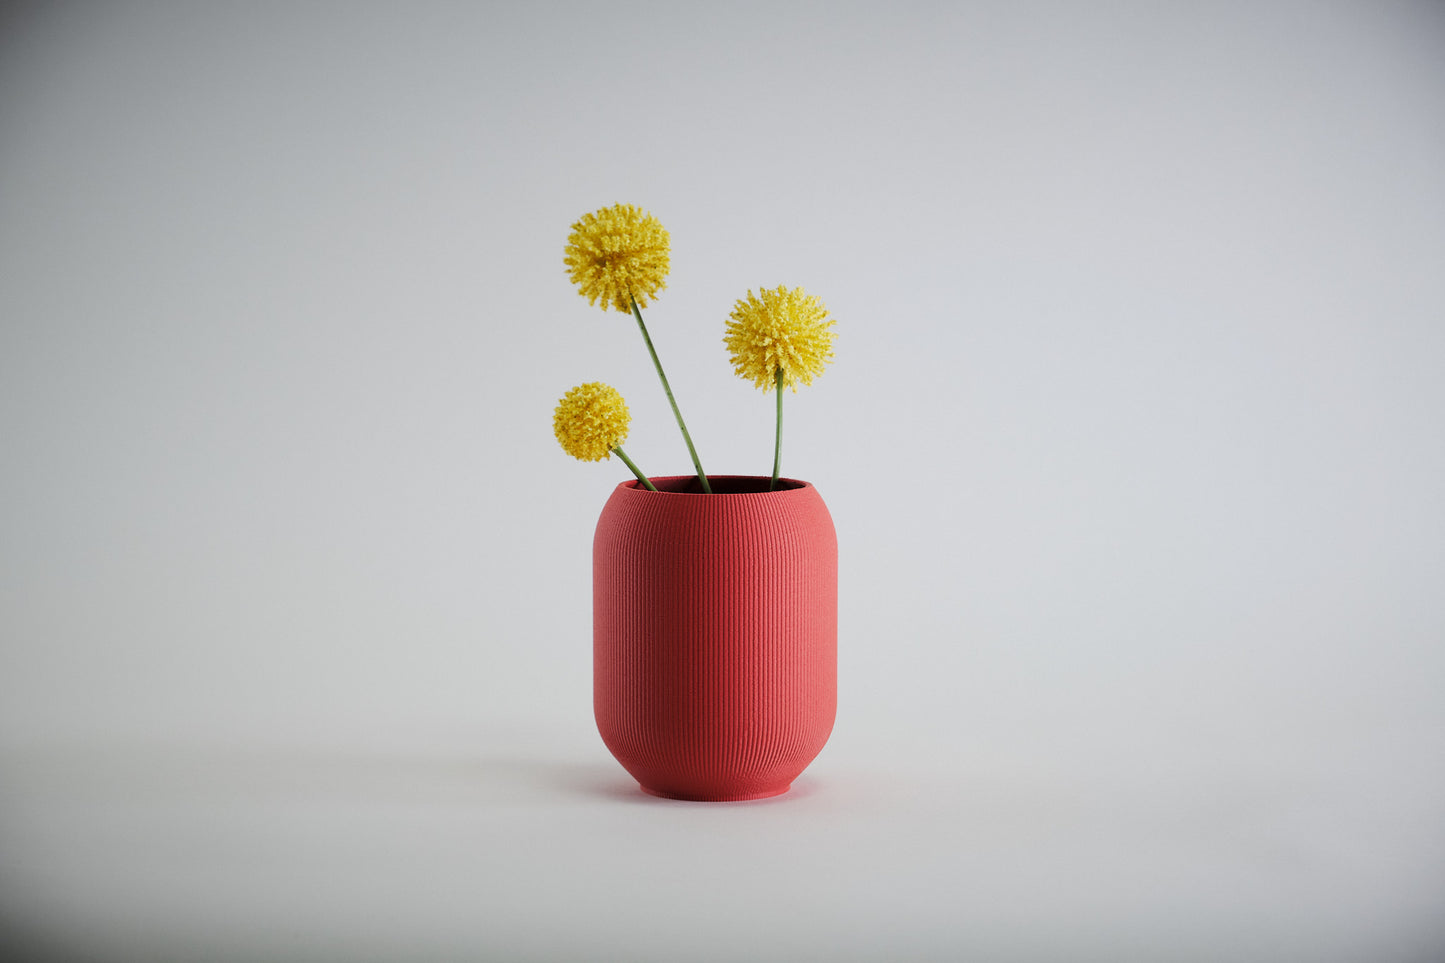 Aspen Vase  I  STYLE 02 Pod - Honey and Ivy 